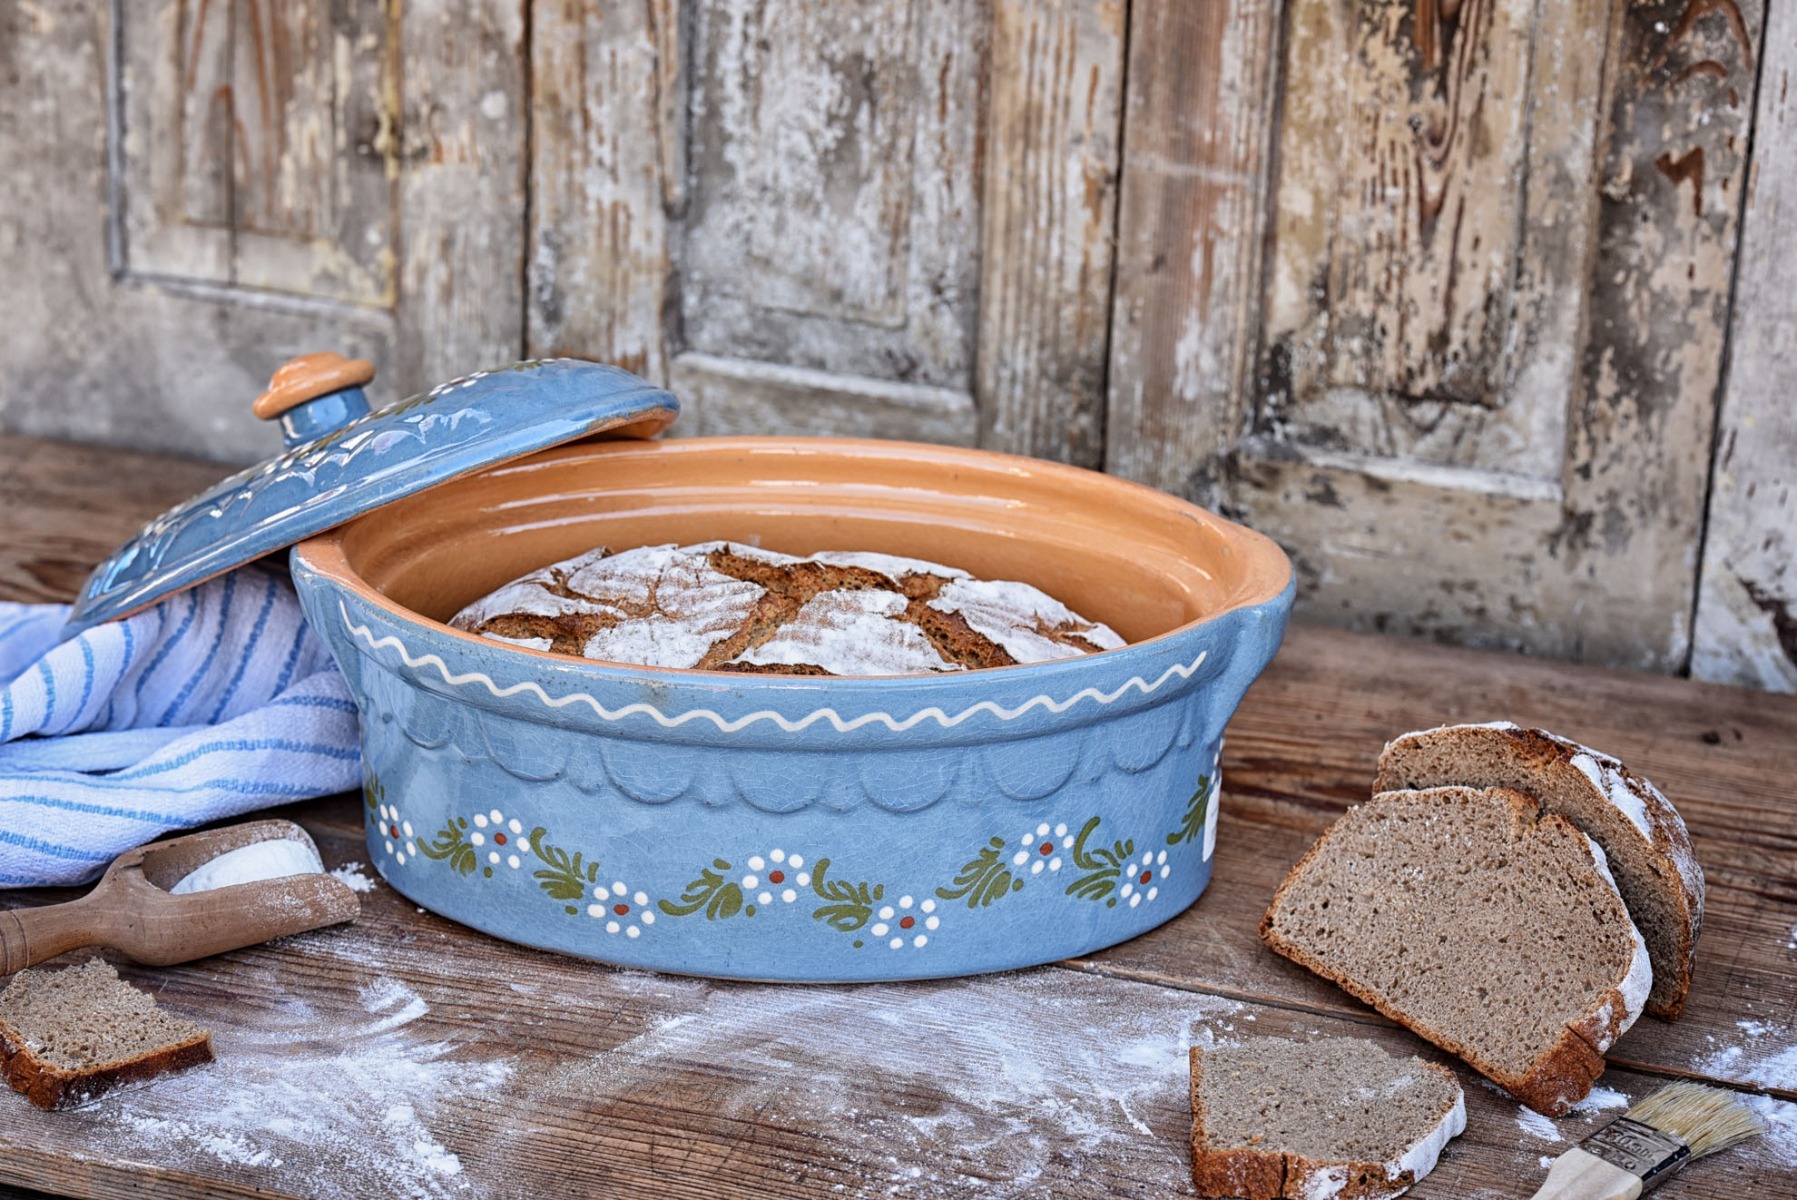 Brotbacktopf, Terrine / Bäckeroffe -  hellblau mit floralem Dekor - auch zum Schmoren geeignet, holzbackofenfest